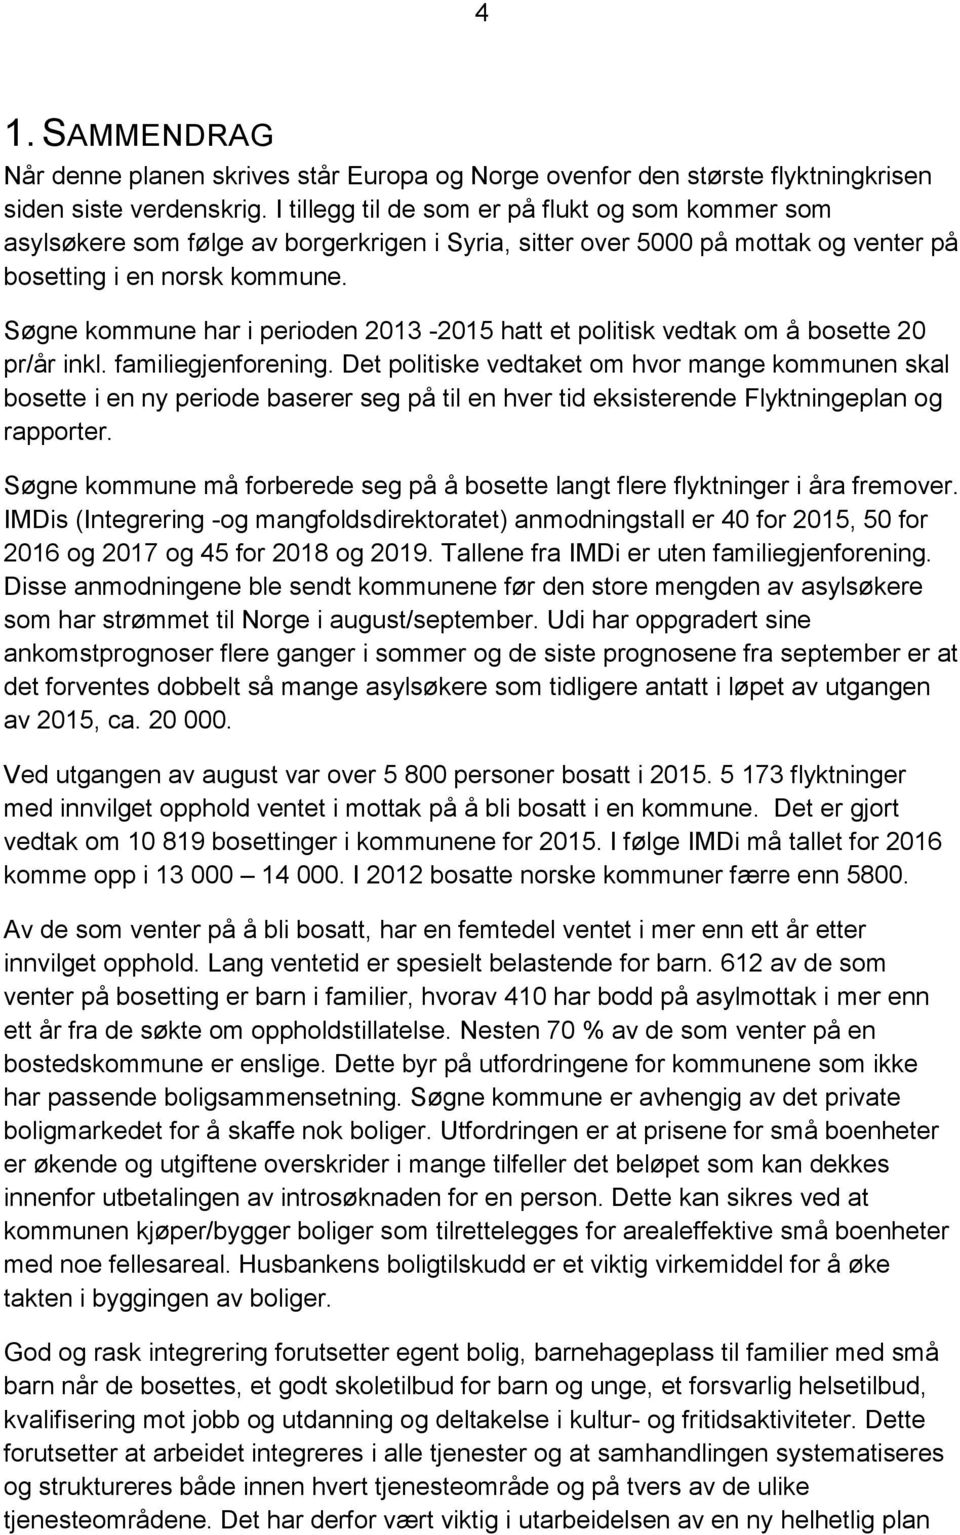 Søgne kommune har i perioden 2013-2015 hatt et politisk vedtak om å bosette 20 pr/år inkl. familiegjenforening.